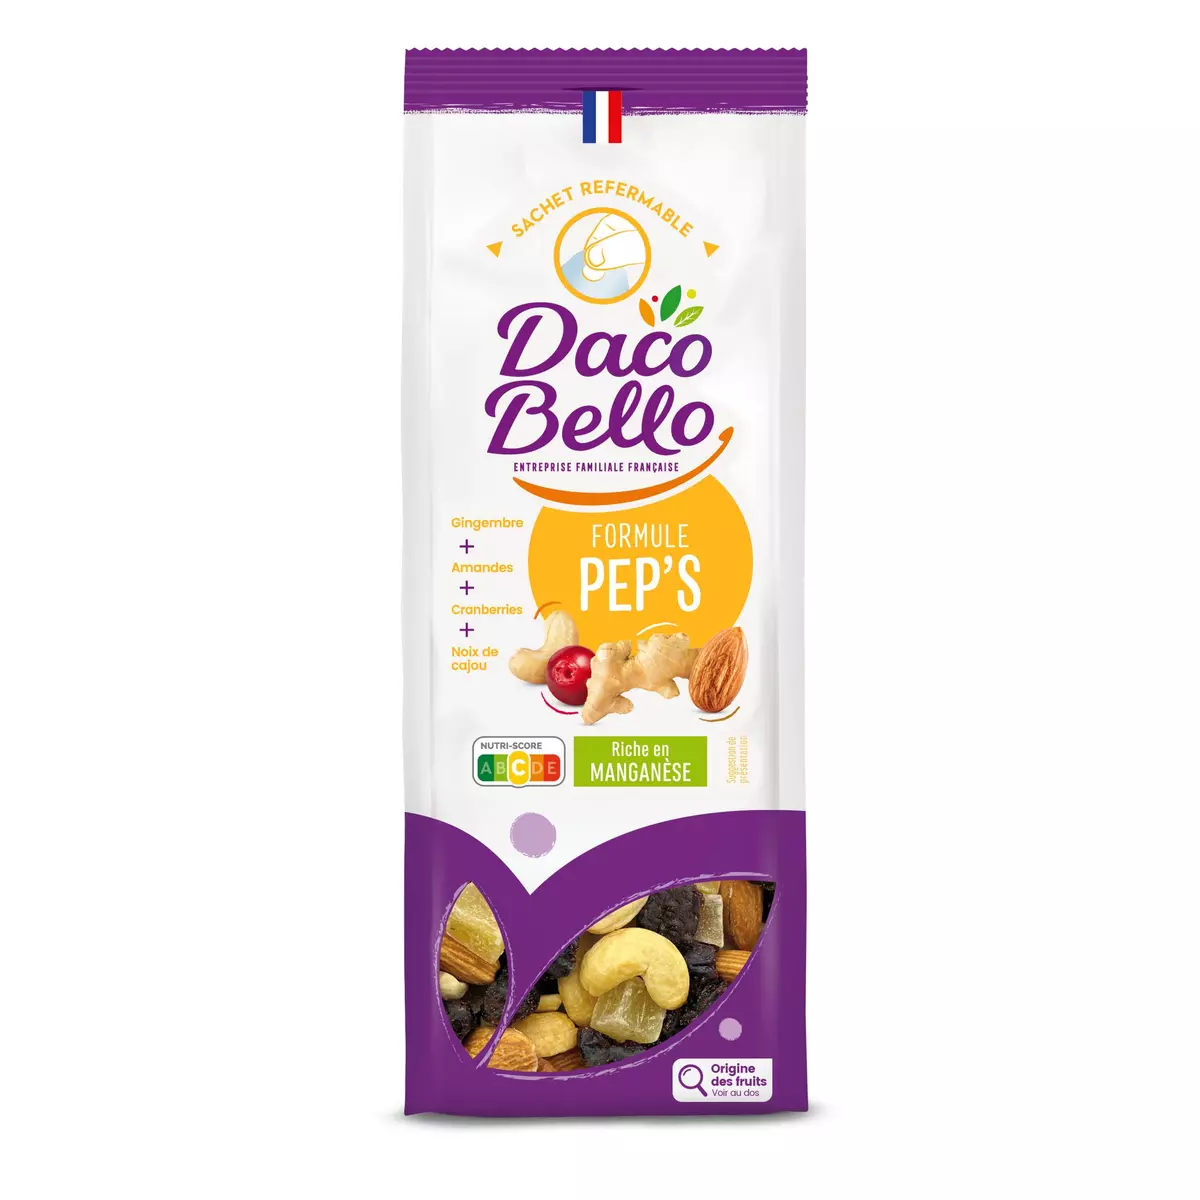 DACO BELLO Formule pep's Mélange de fruits séchés sucrés et fruits secs à coques 200g